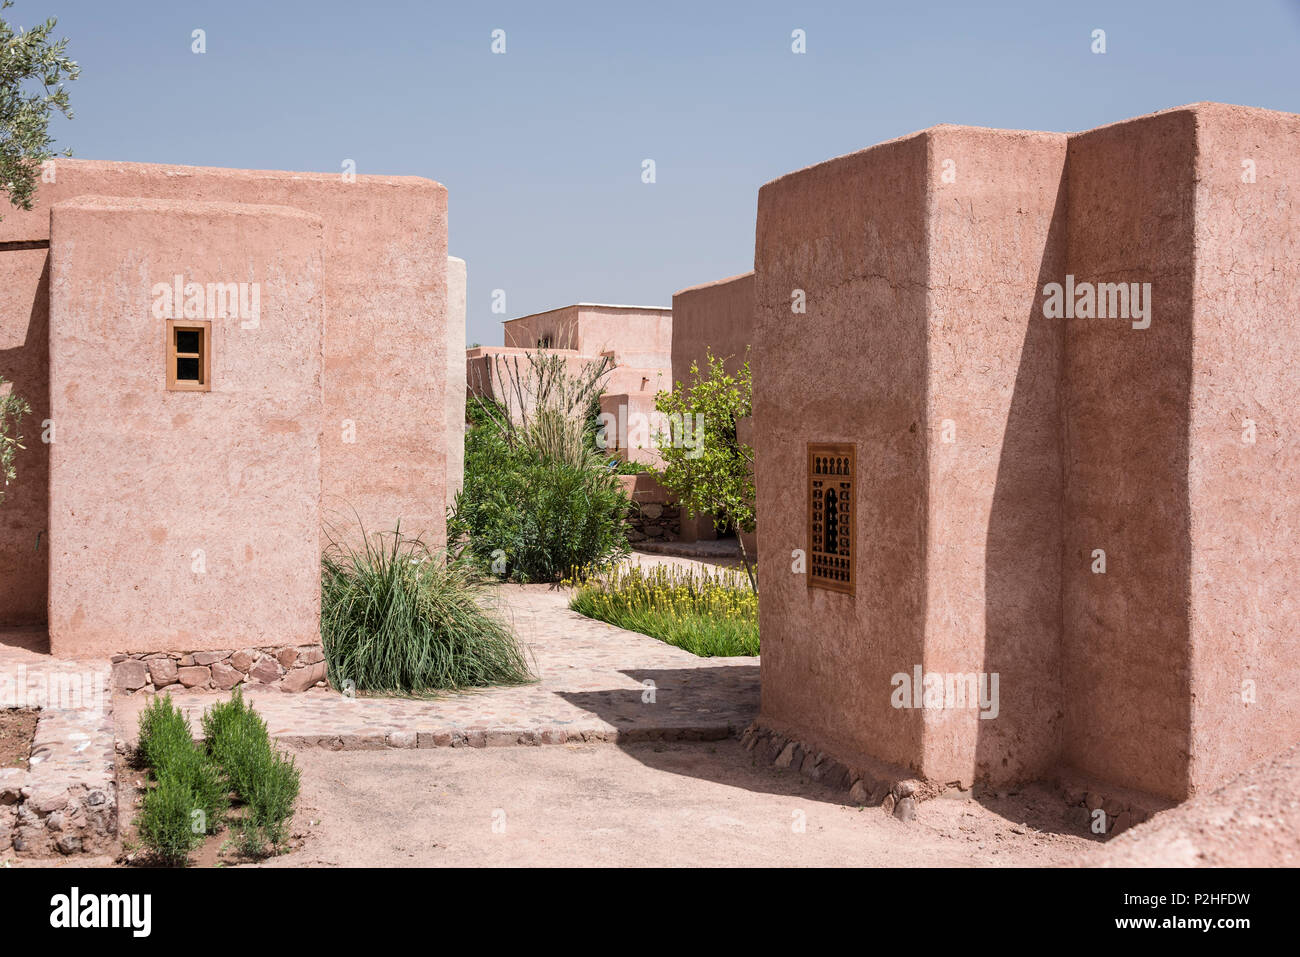 La facciata esterna di adobe in stile berbero casette con cortile di alberi di limone e di bambù e marocchine piante selvatiche Foto Stock